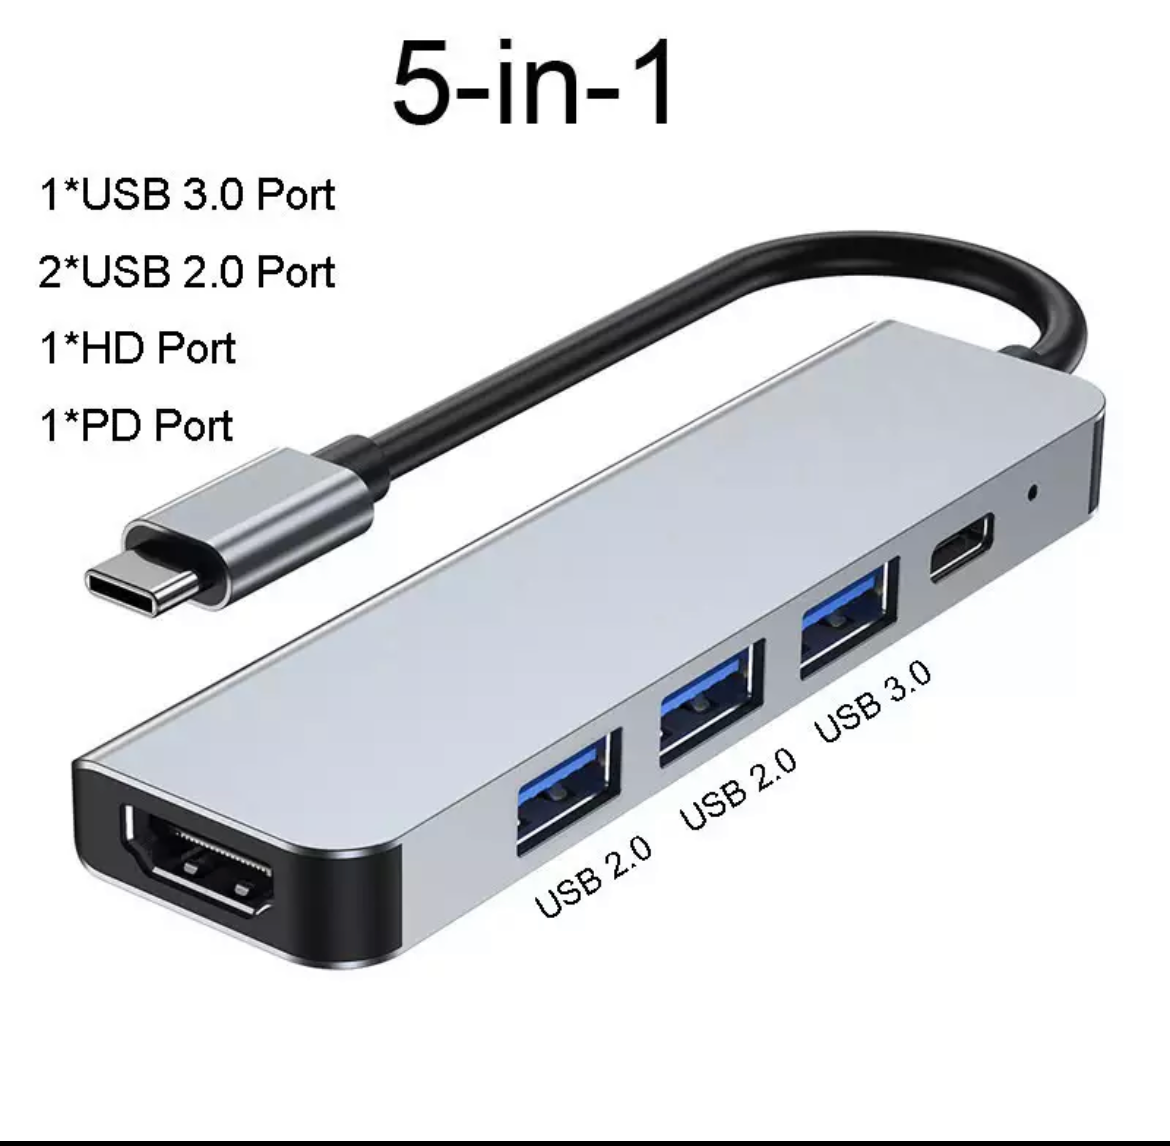 Adattatore / Adapter USB C HUB 5 in 1 per Mac/PC